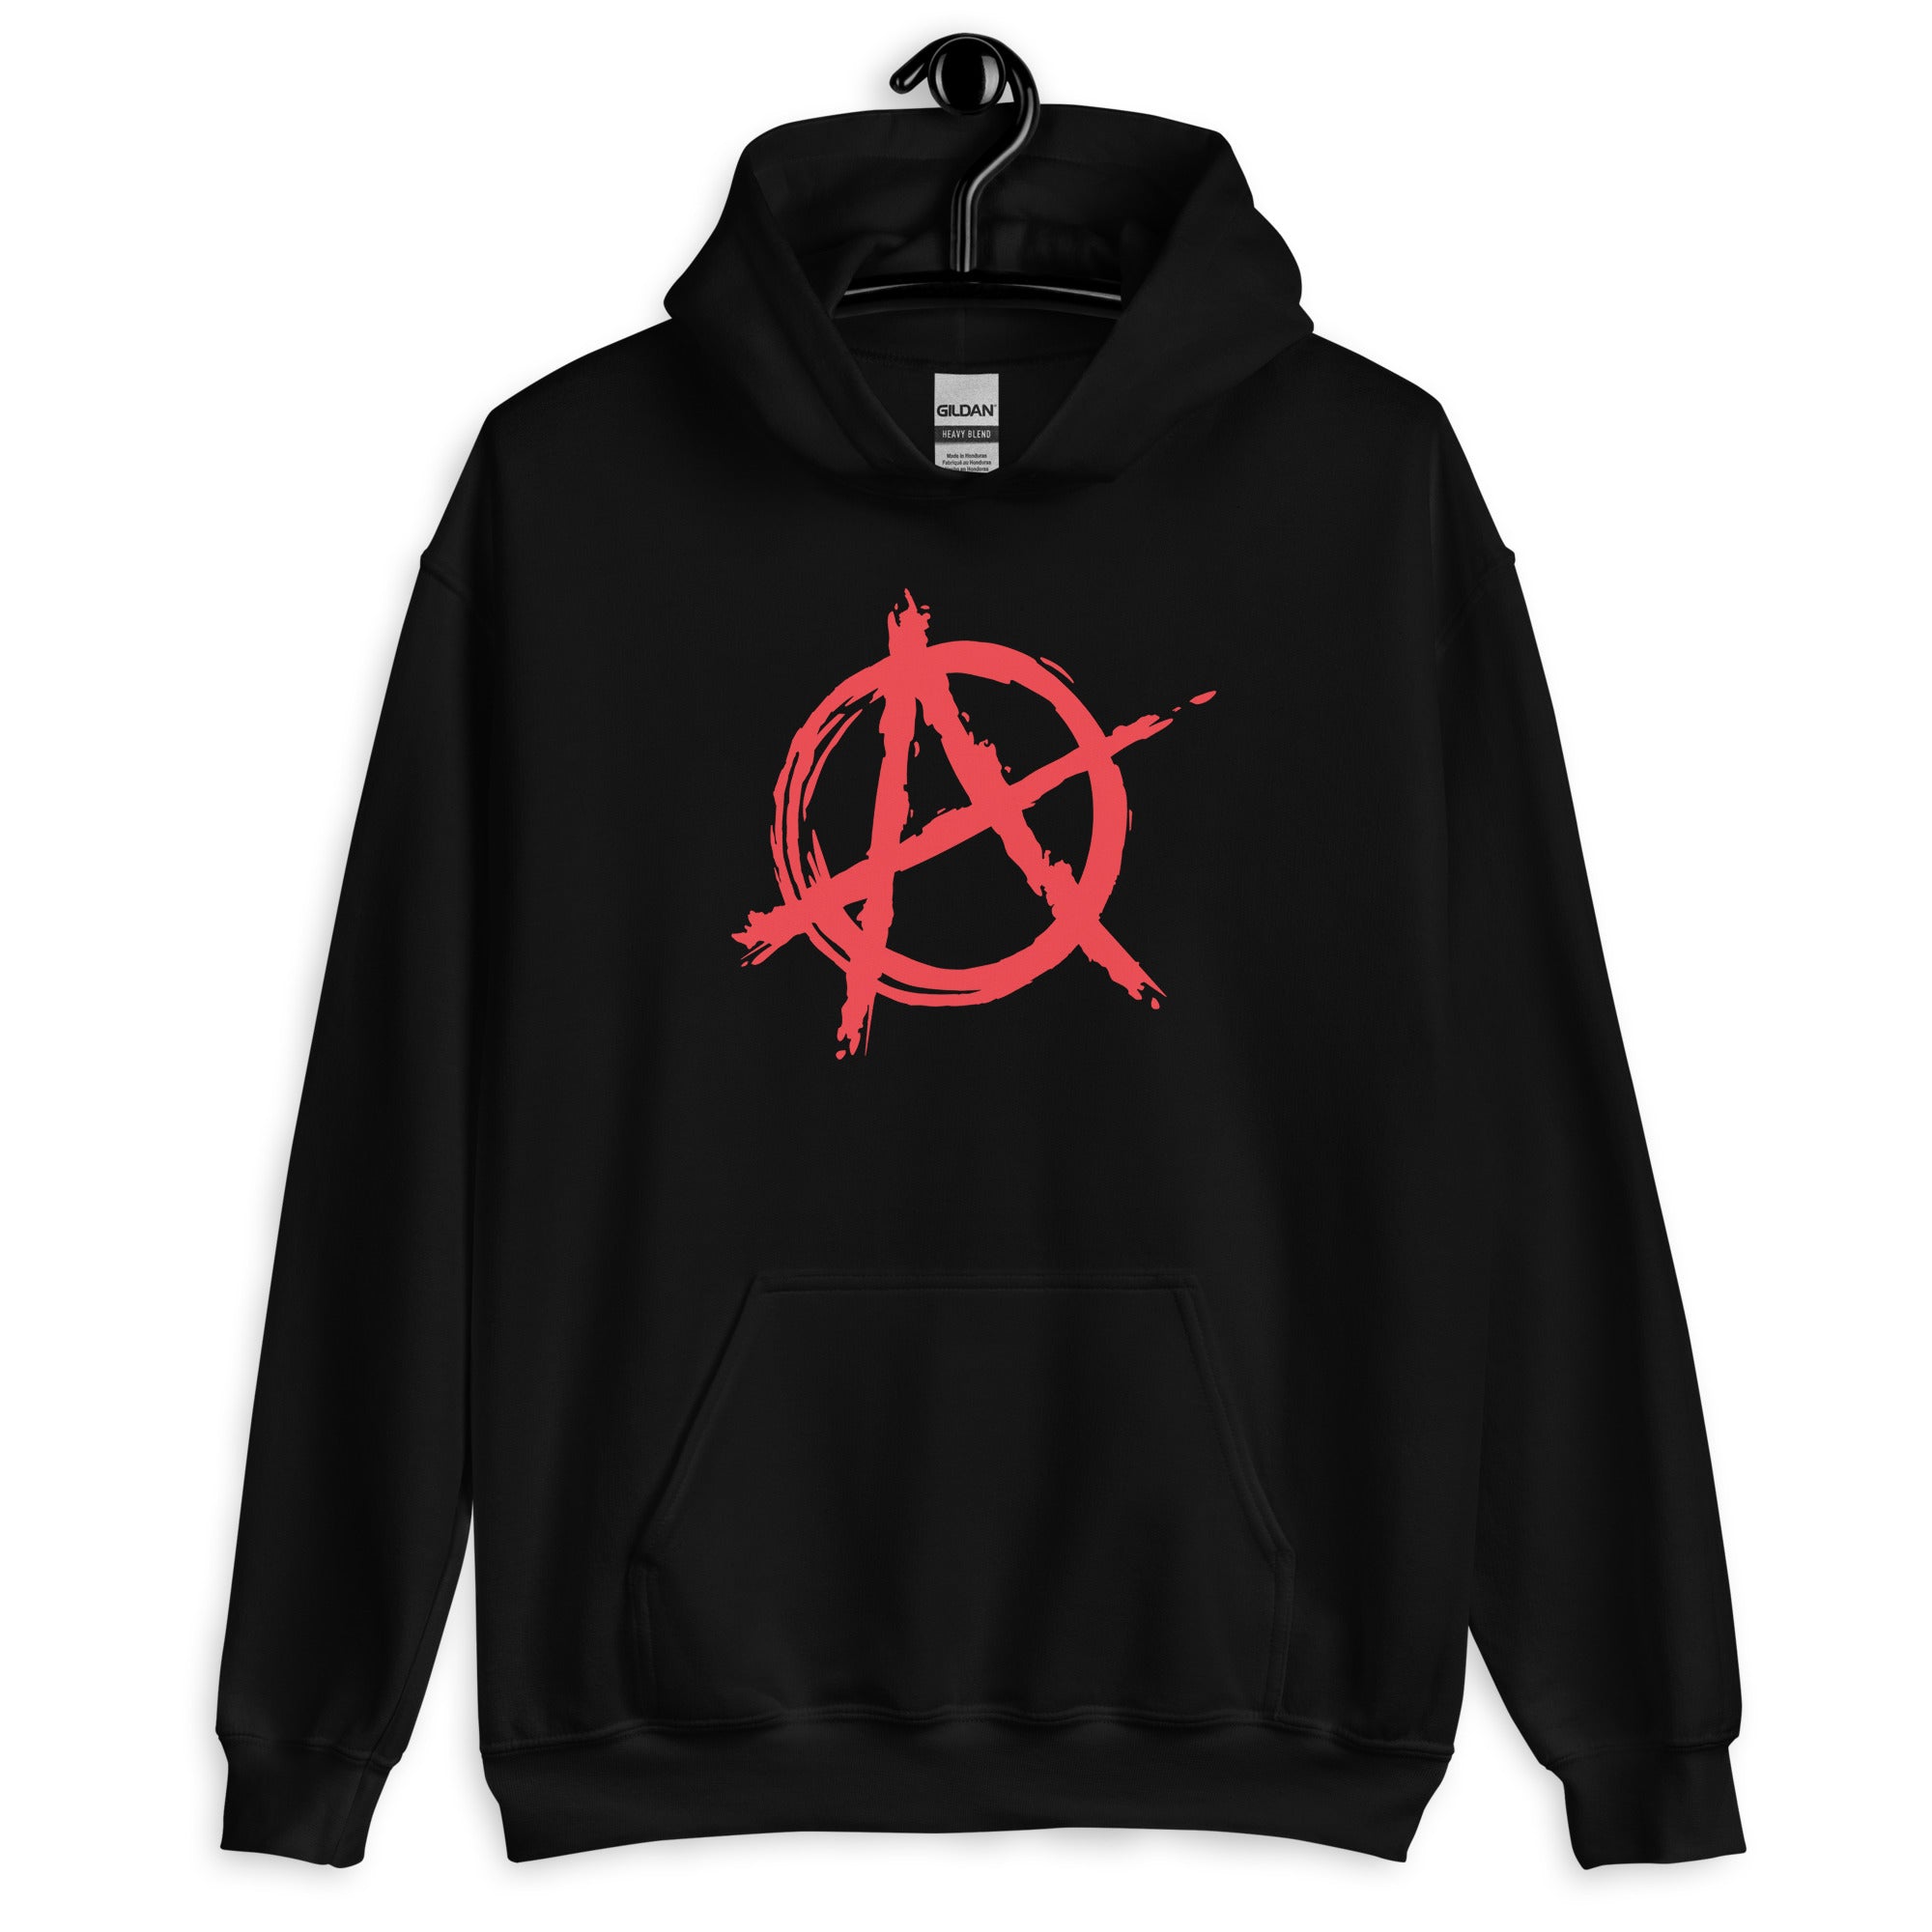 Red Anarchy is Order Symbol Punk Rock Unisex Hoodie Sweatshirt - Edge of Life Designs